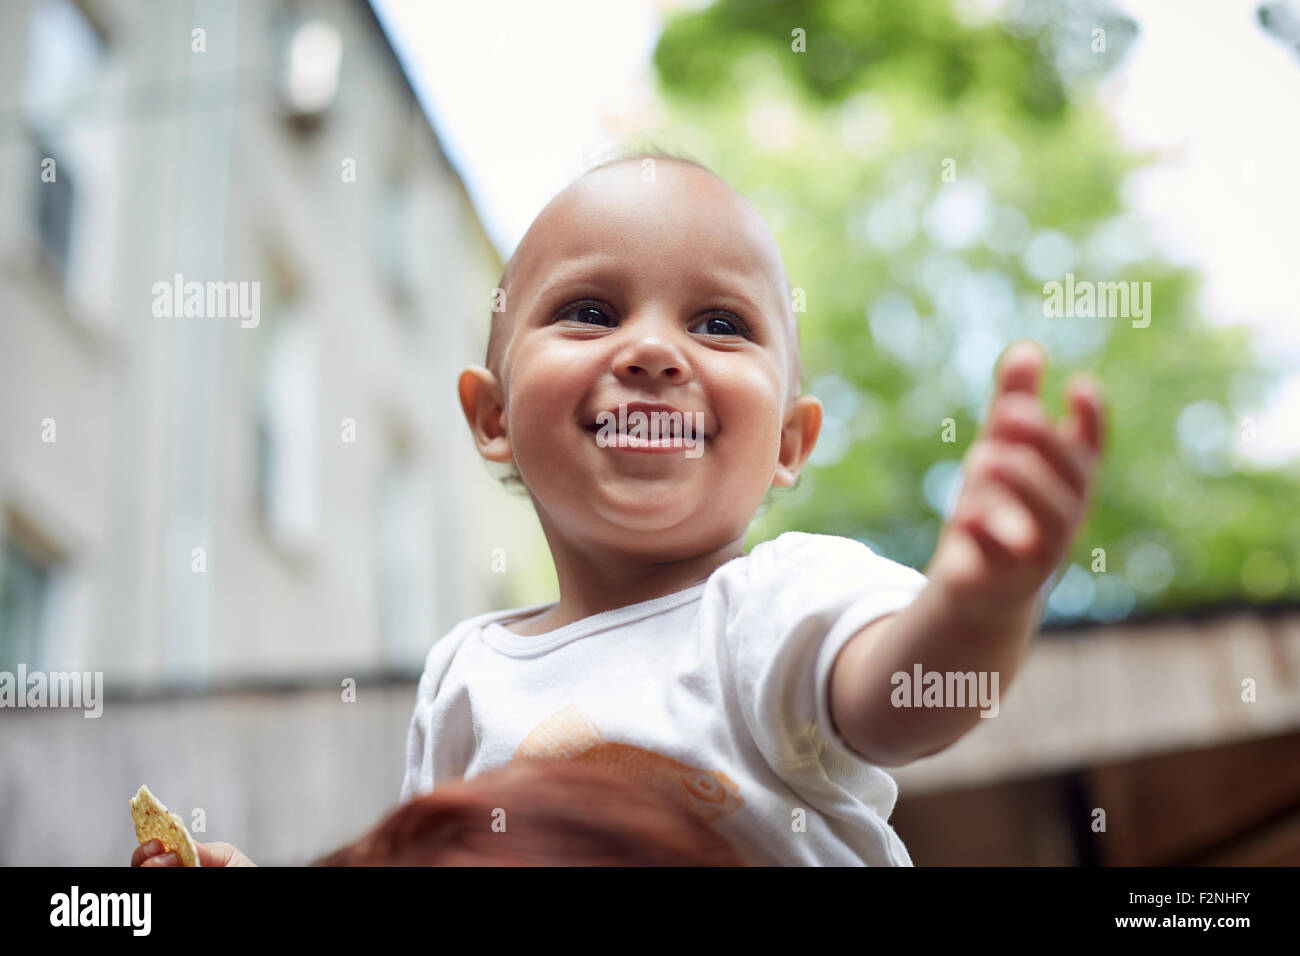 Raza mixta bebé niño sonriendo al aire libre Foto de stock